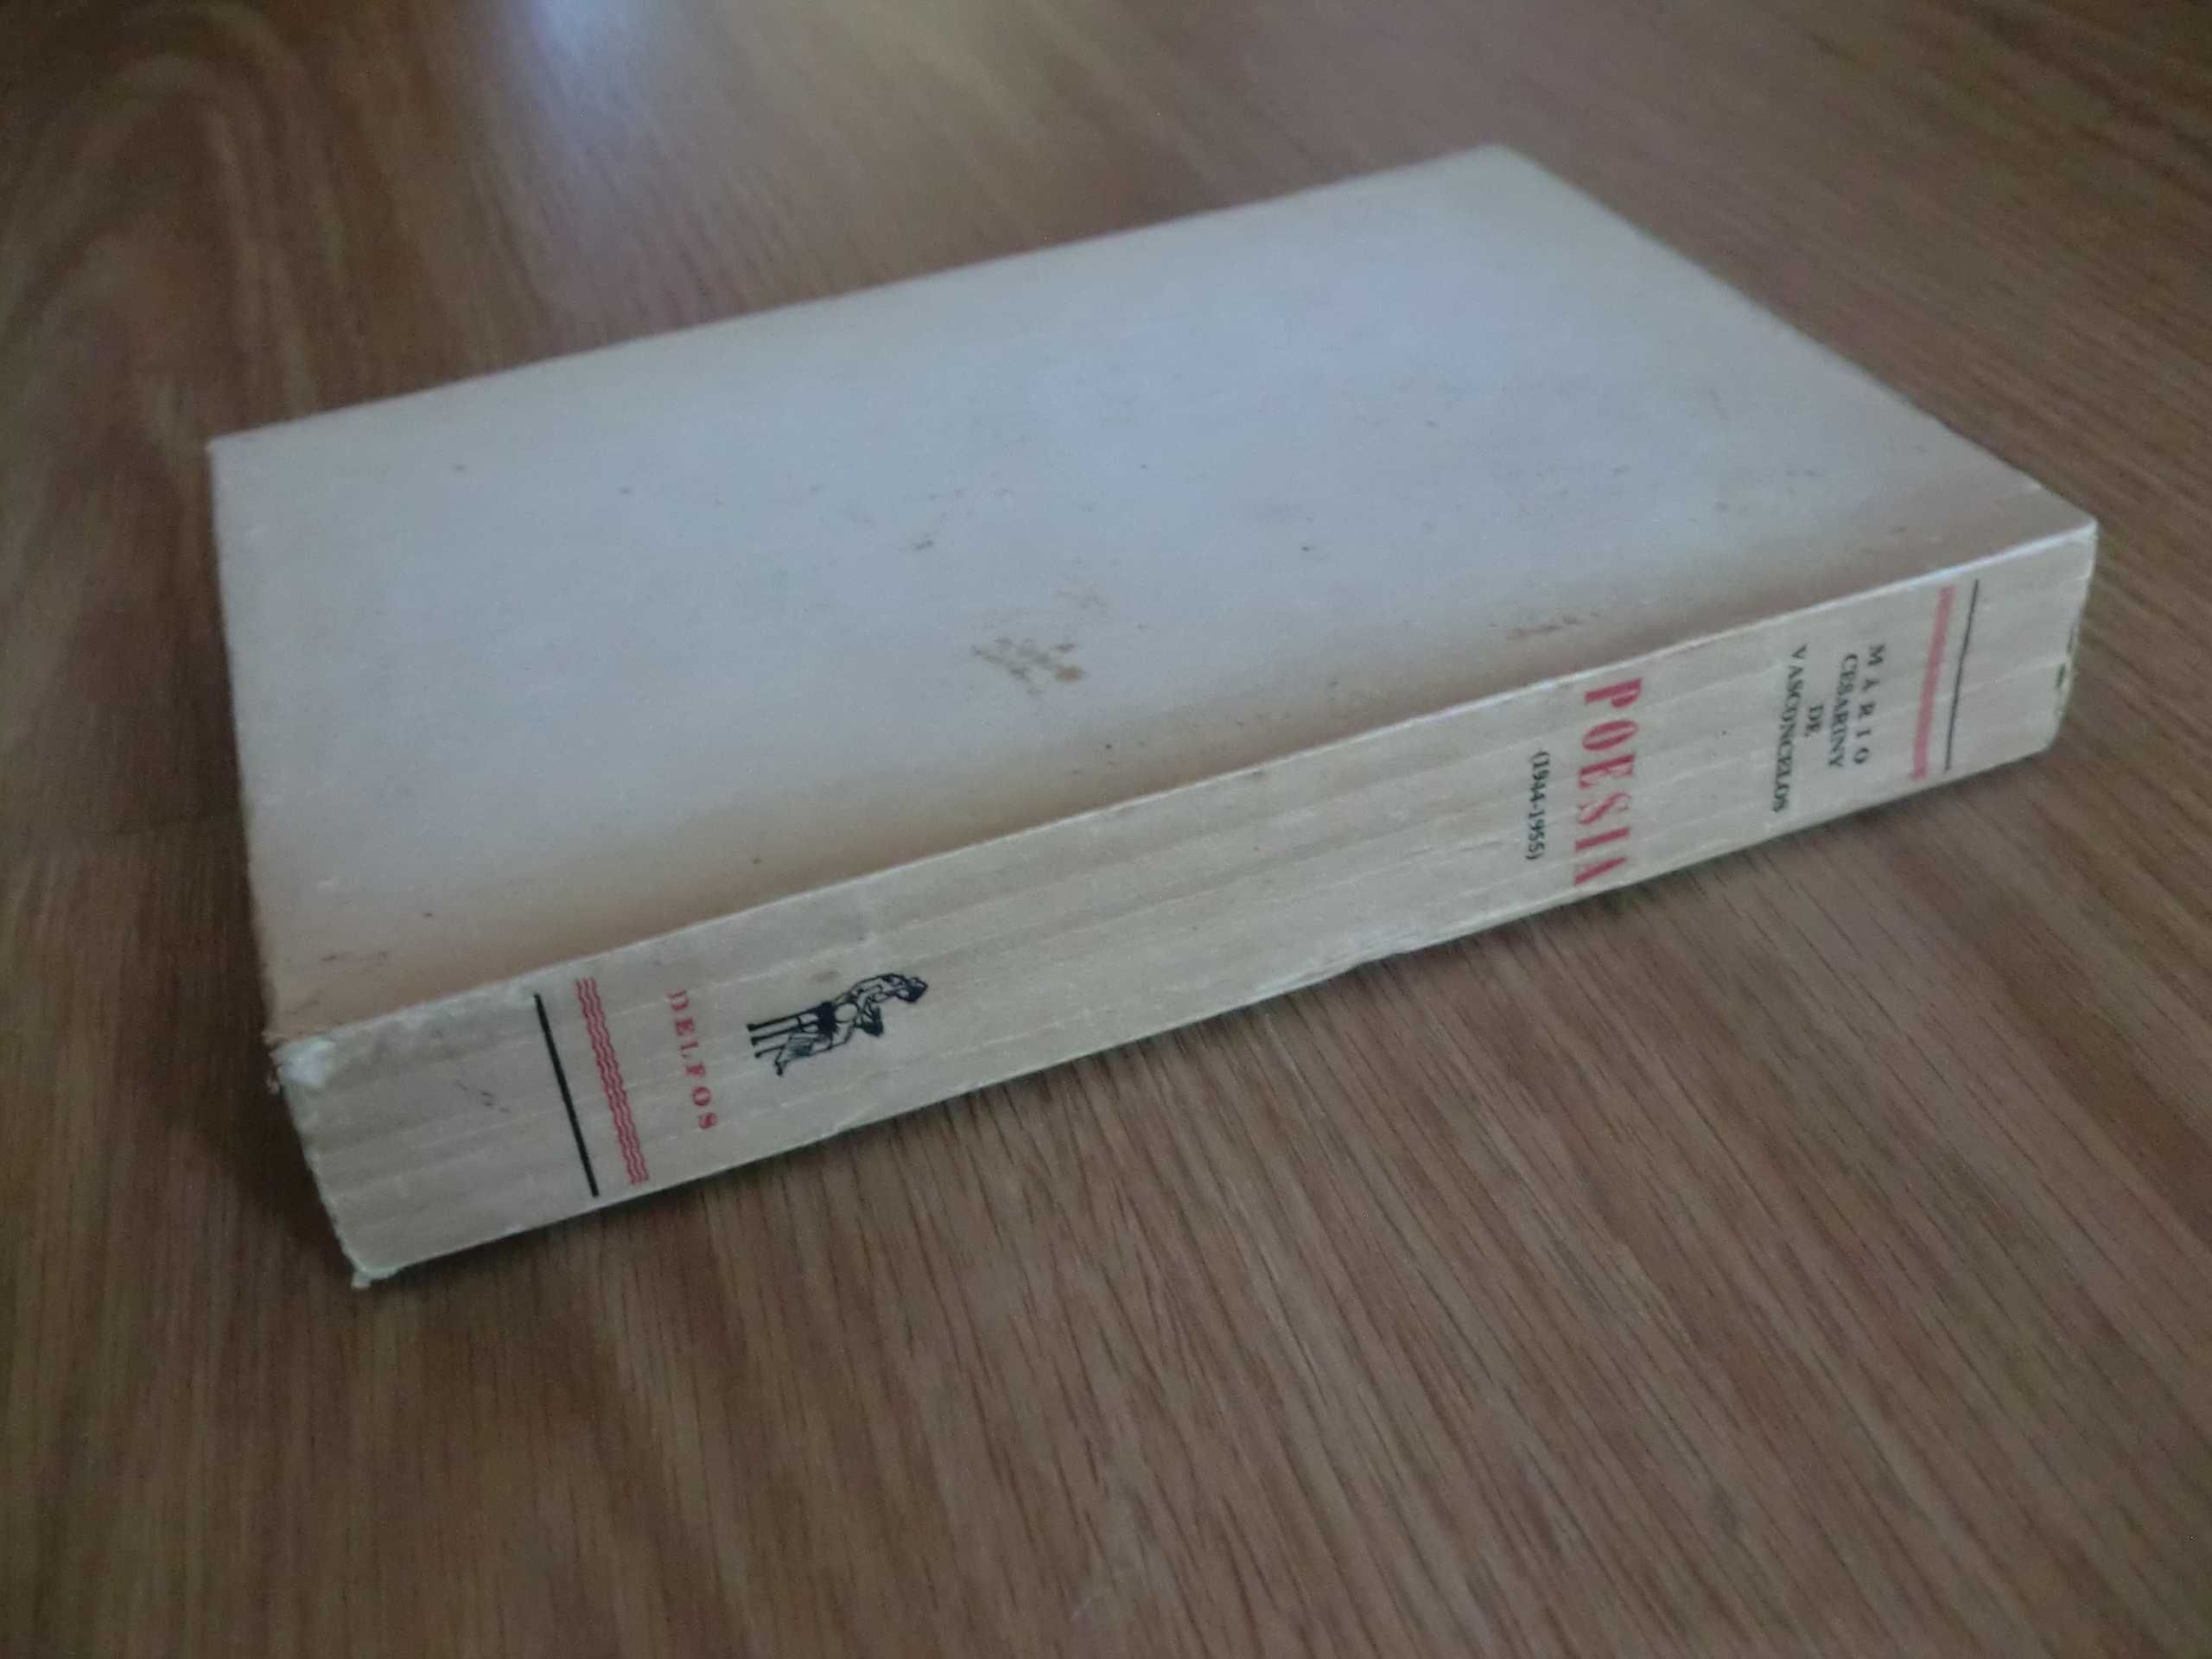 Poesia (1944/1955)
de Mário Cesariny de Vasconcelos - 1ª Edição